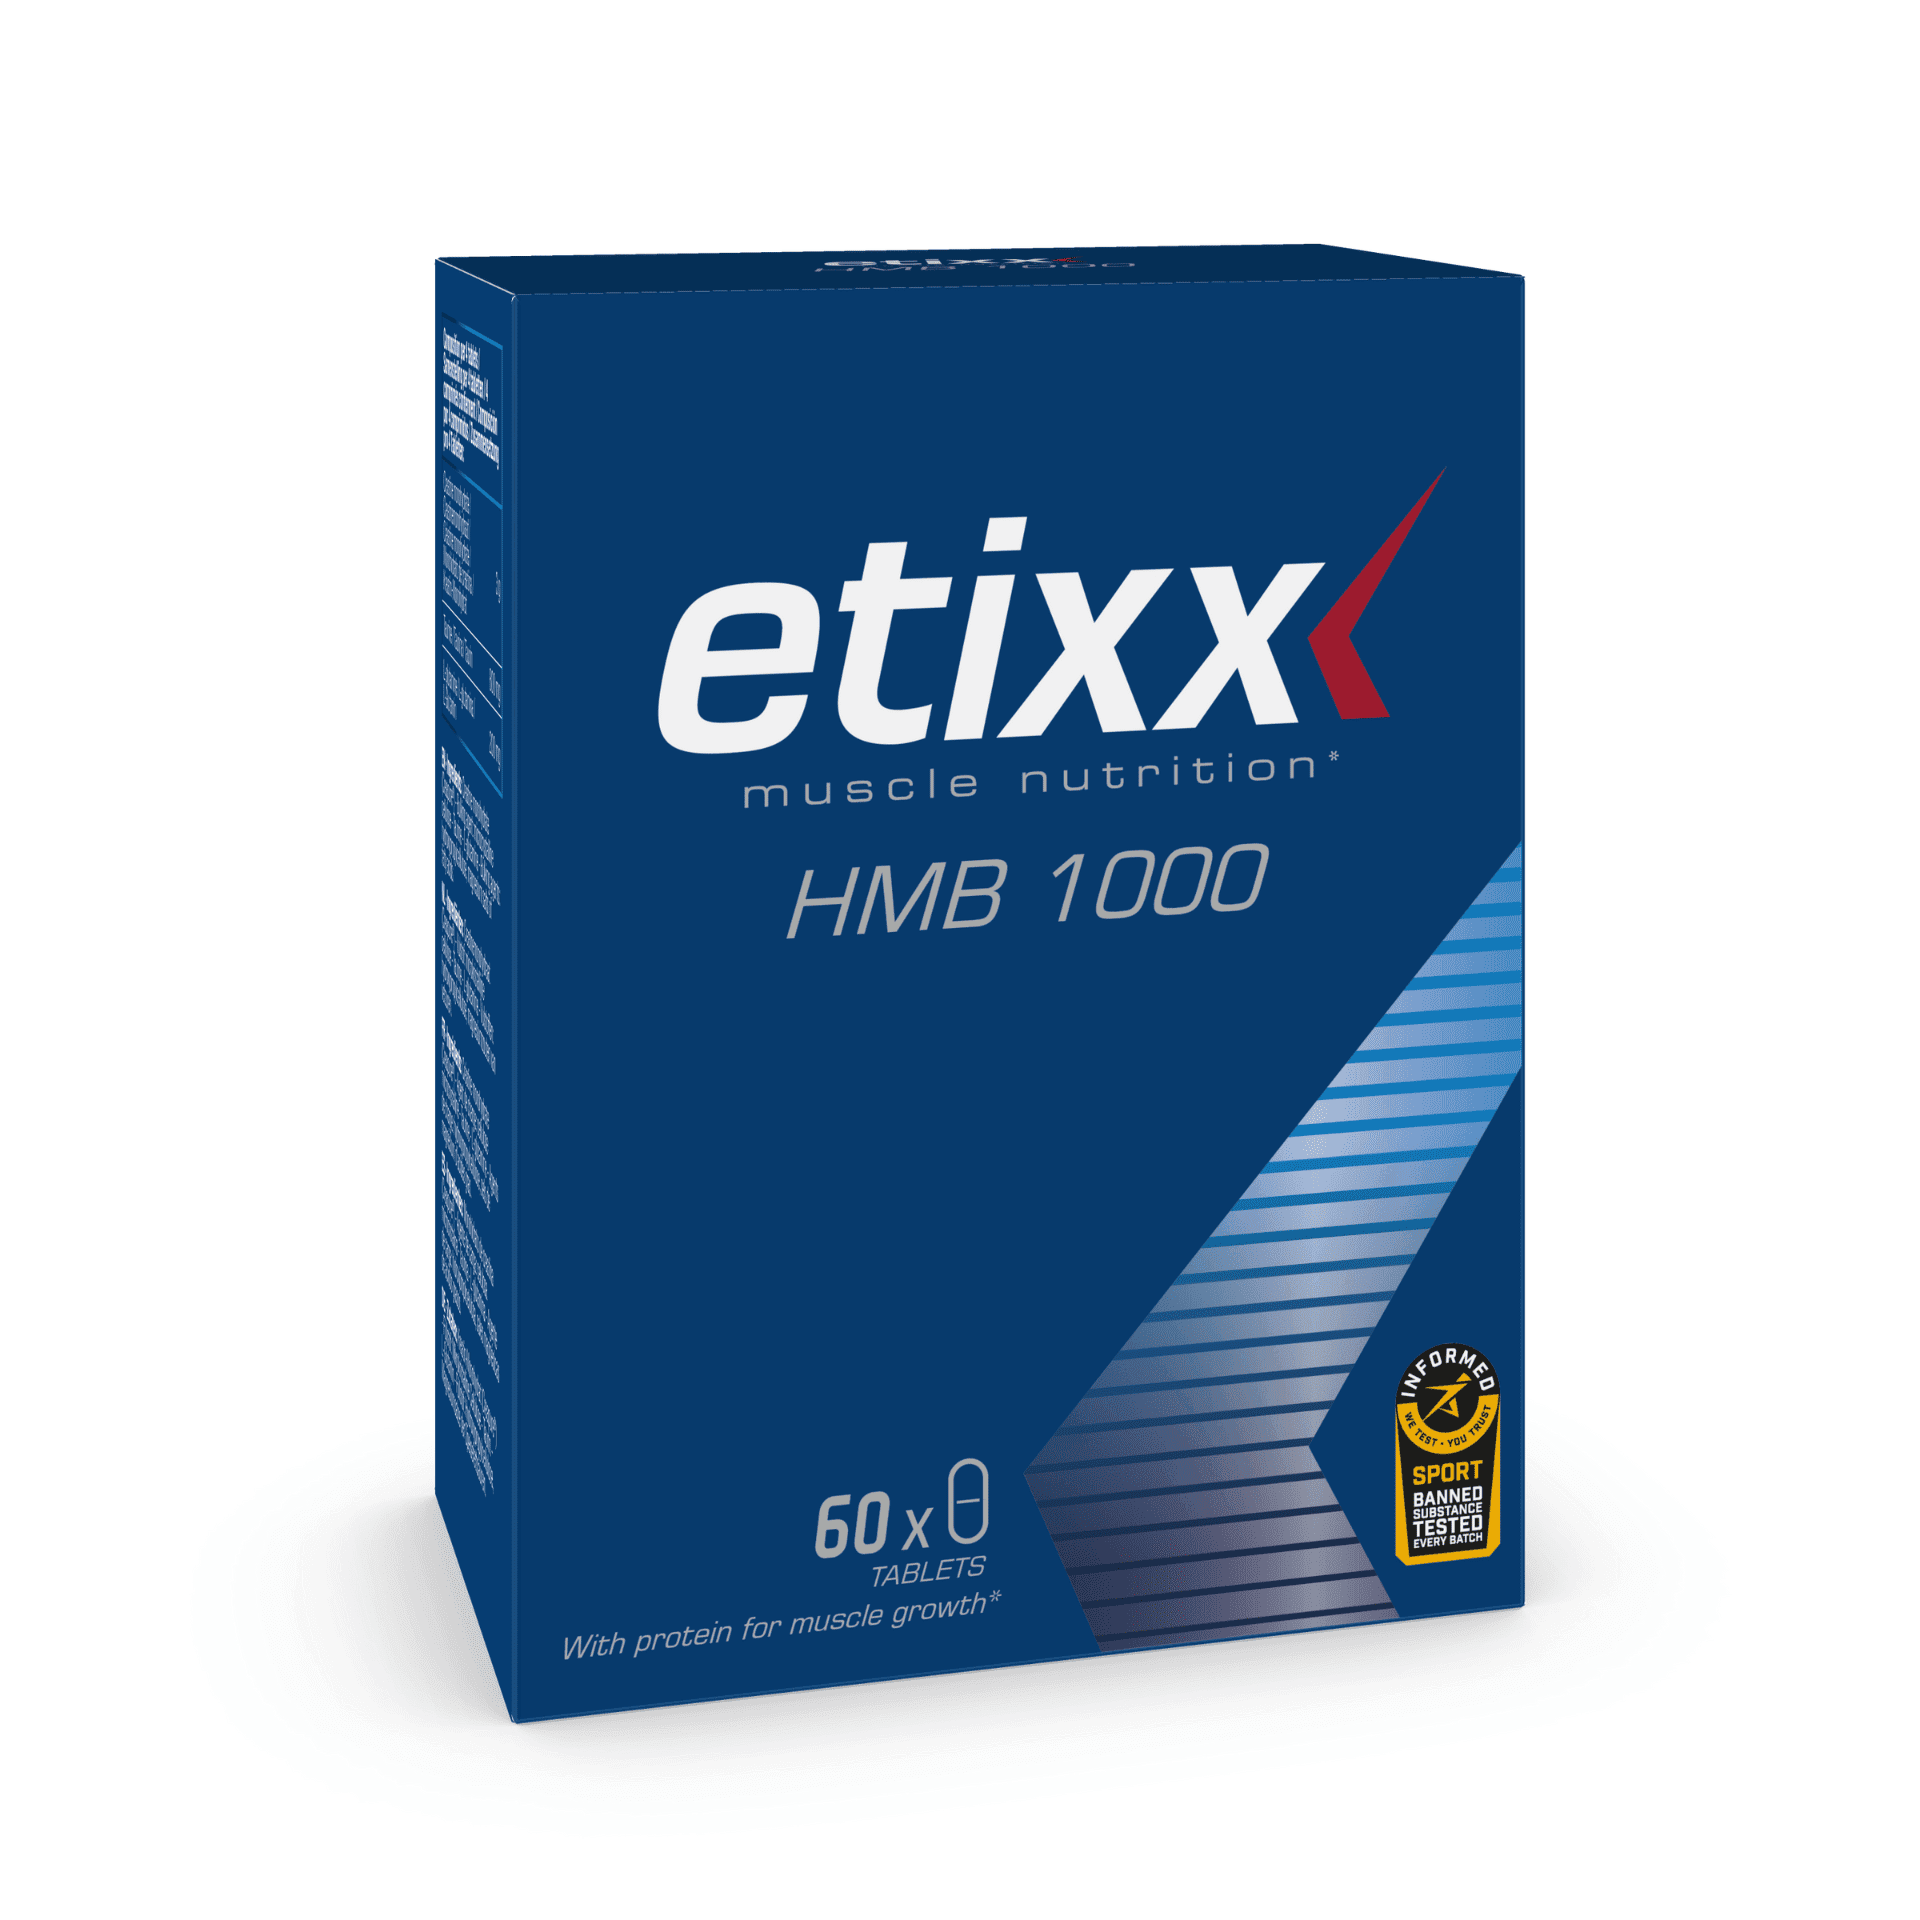 Etixx Hmb 1000